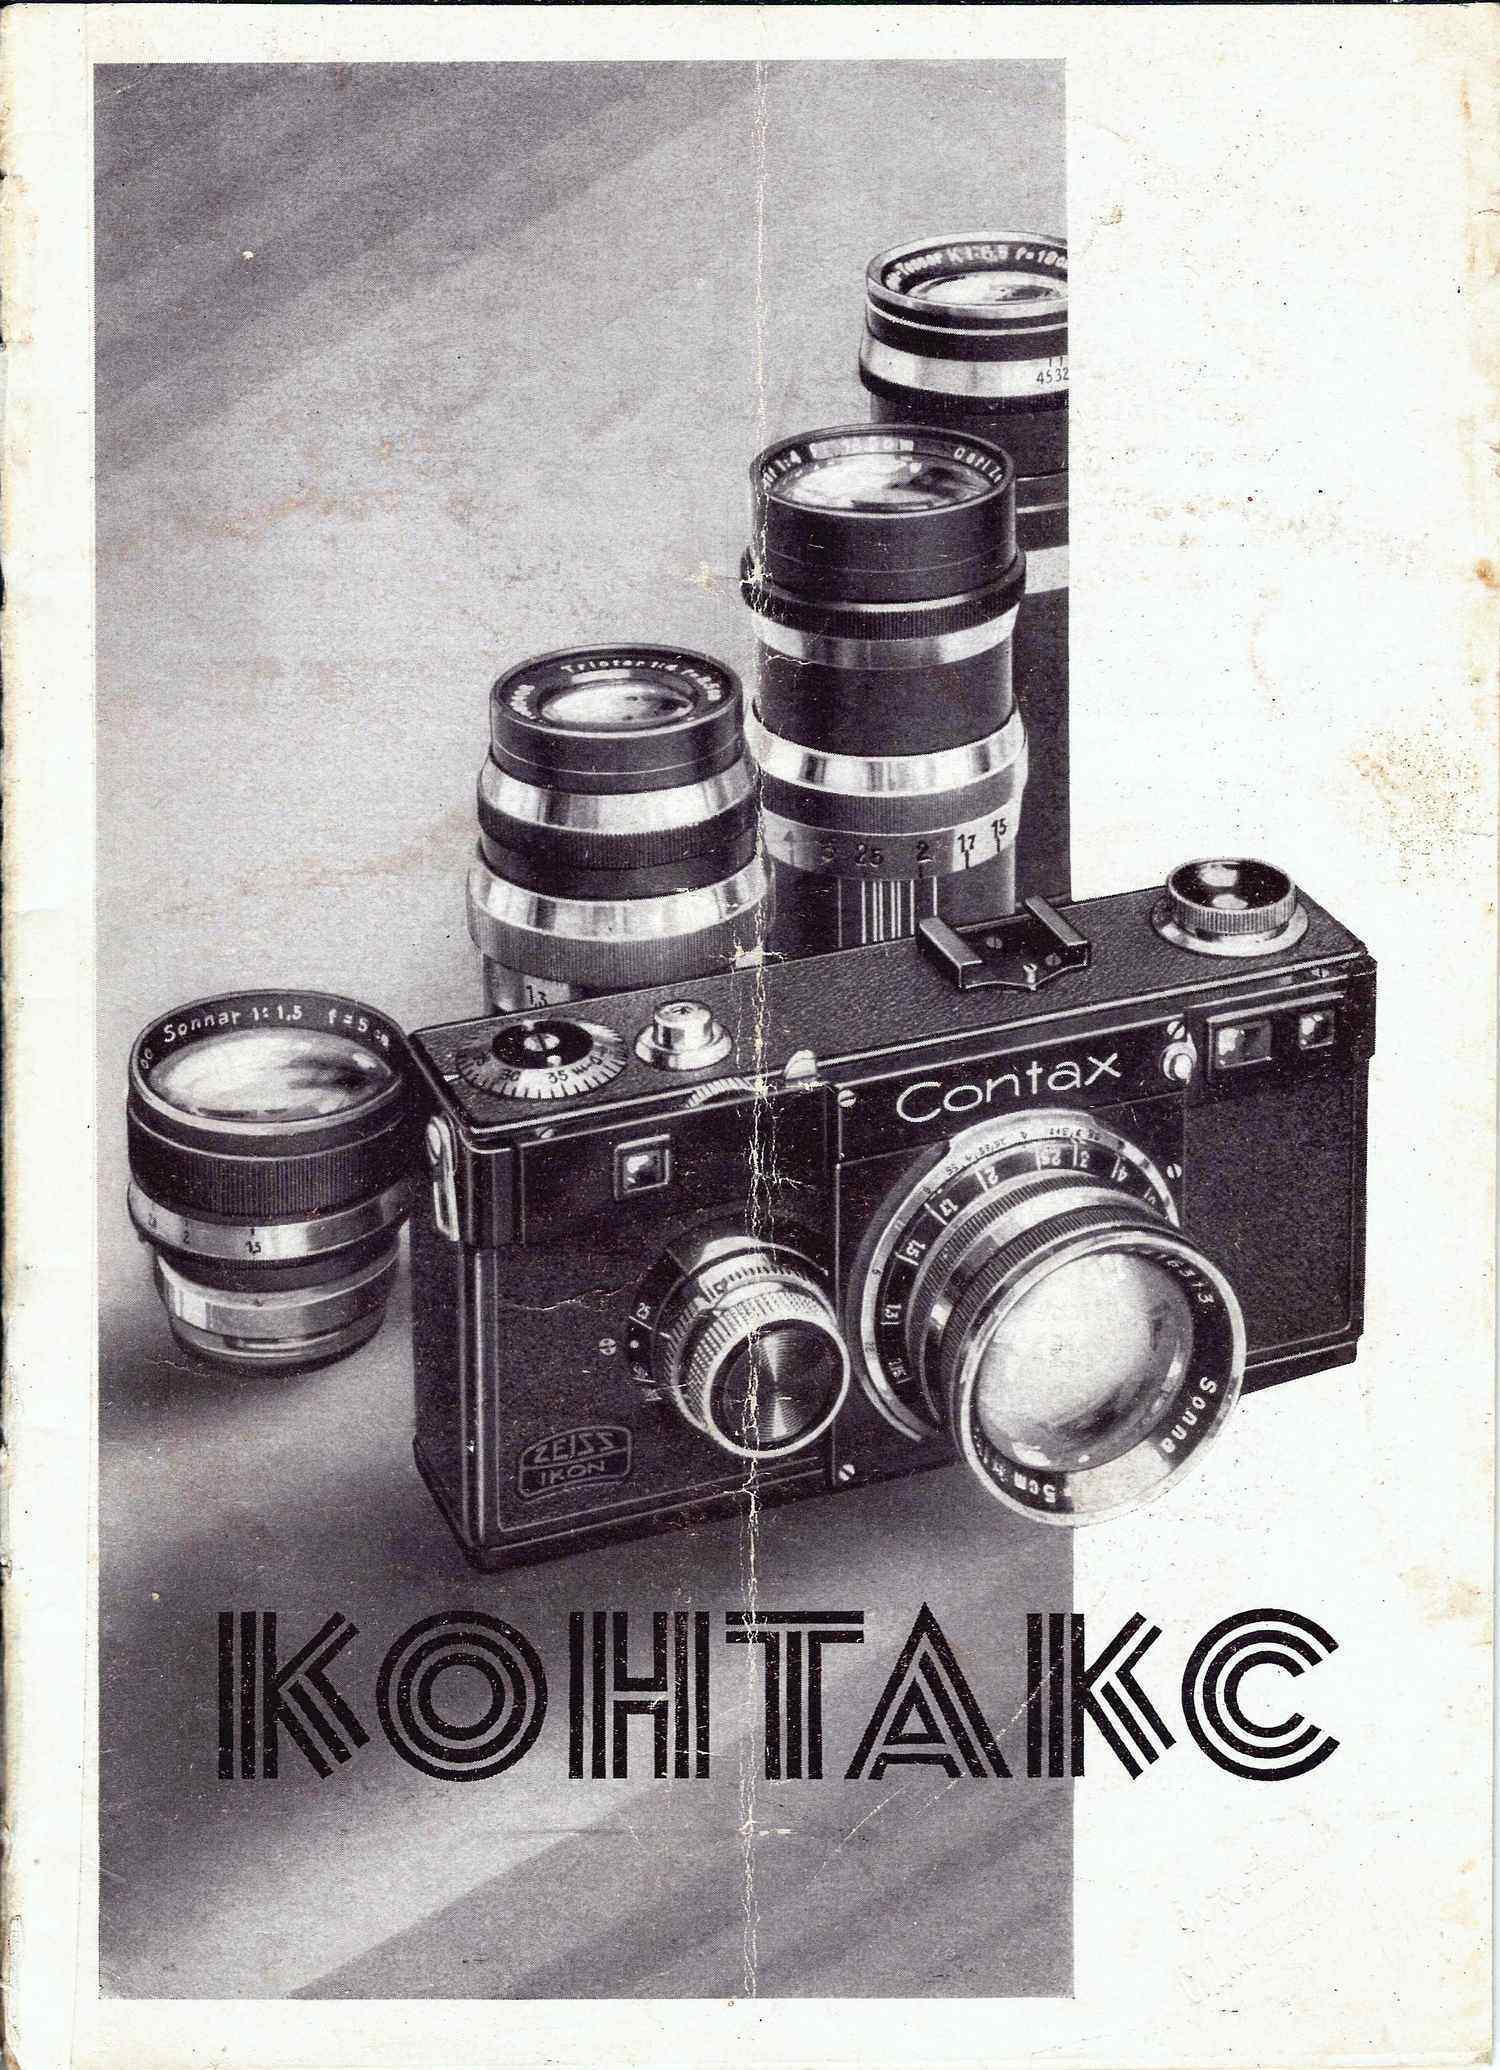 Рекламный проспект фотоаппарата «Контакс». На русском языке. Германия, конец 1940-х - начало 1950-х годов.